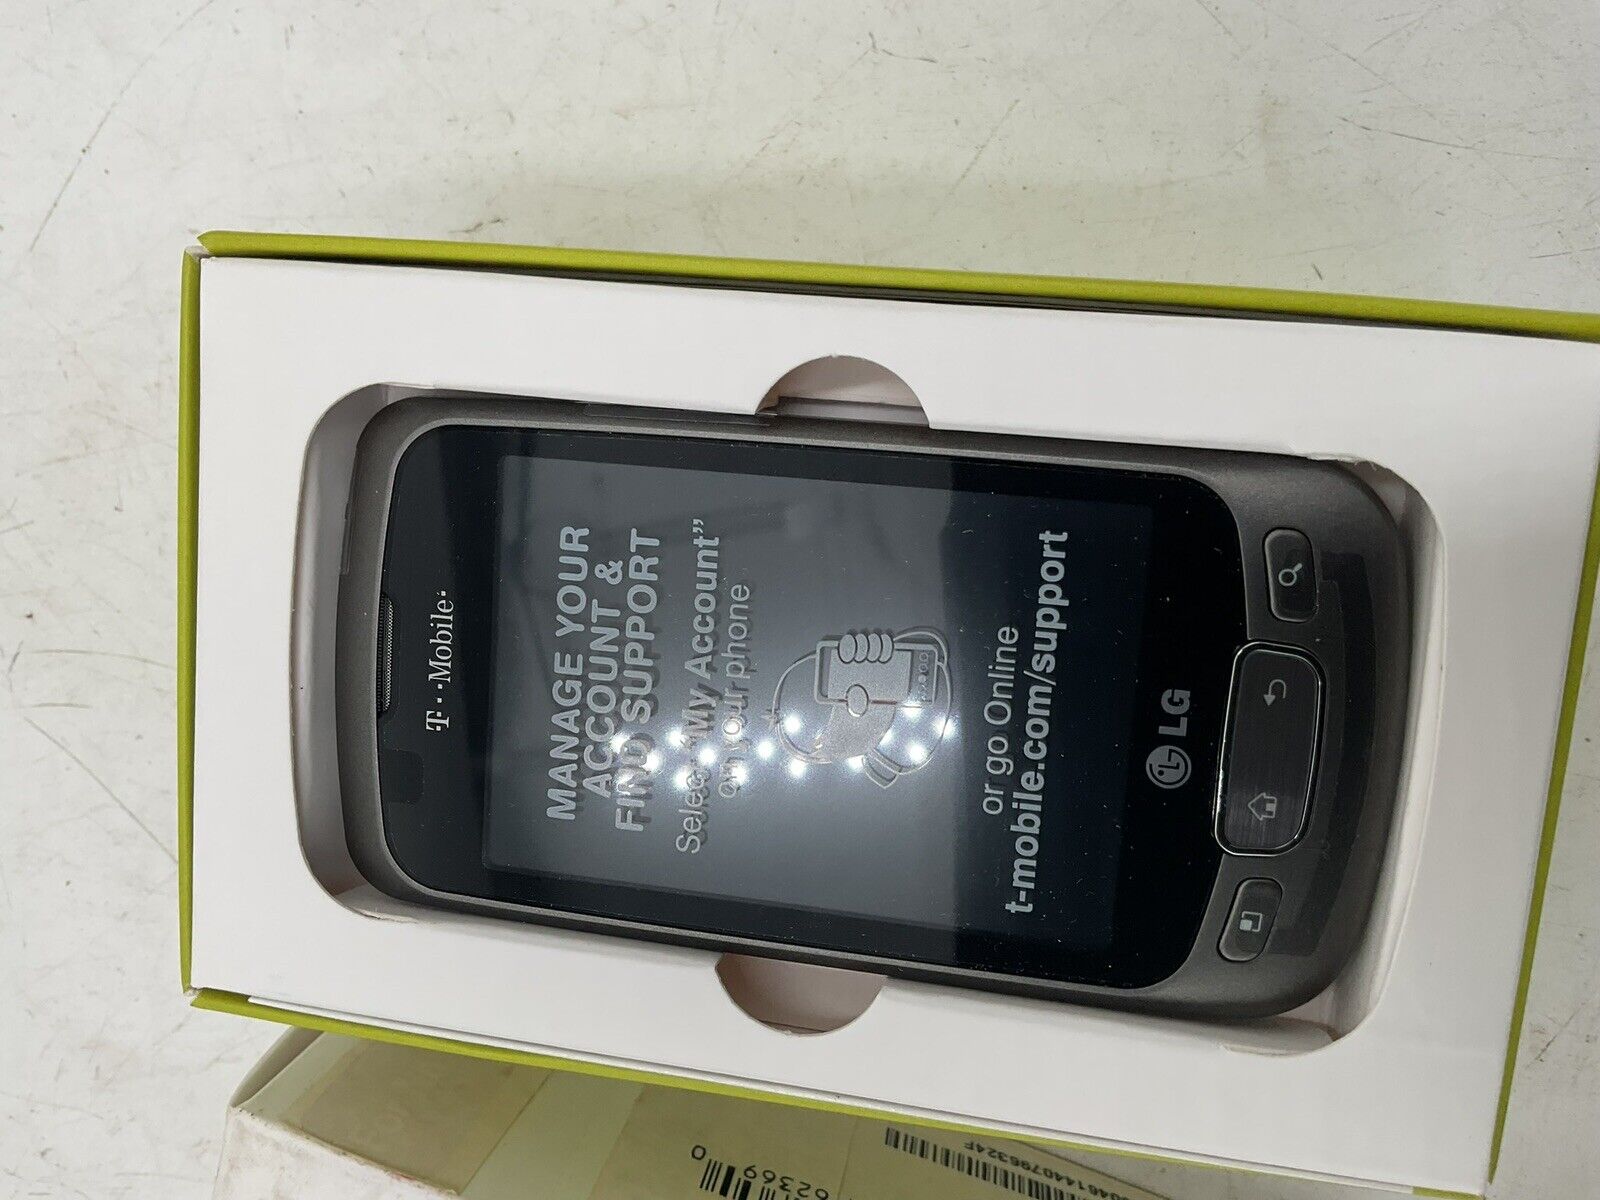 LG Optimus T P509 Titanium ( T-Mobile ) Rare Android Smartphone